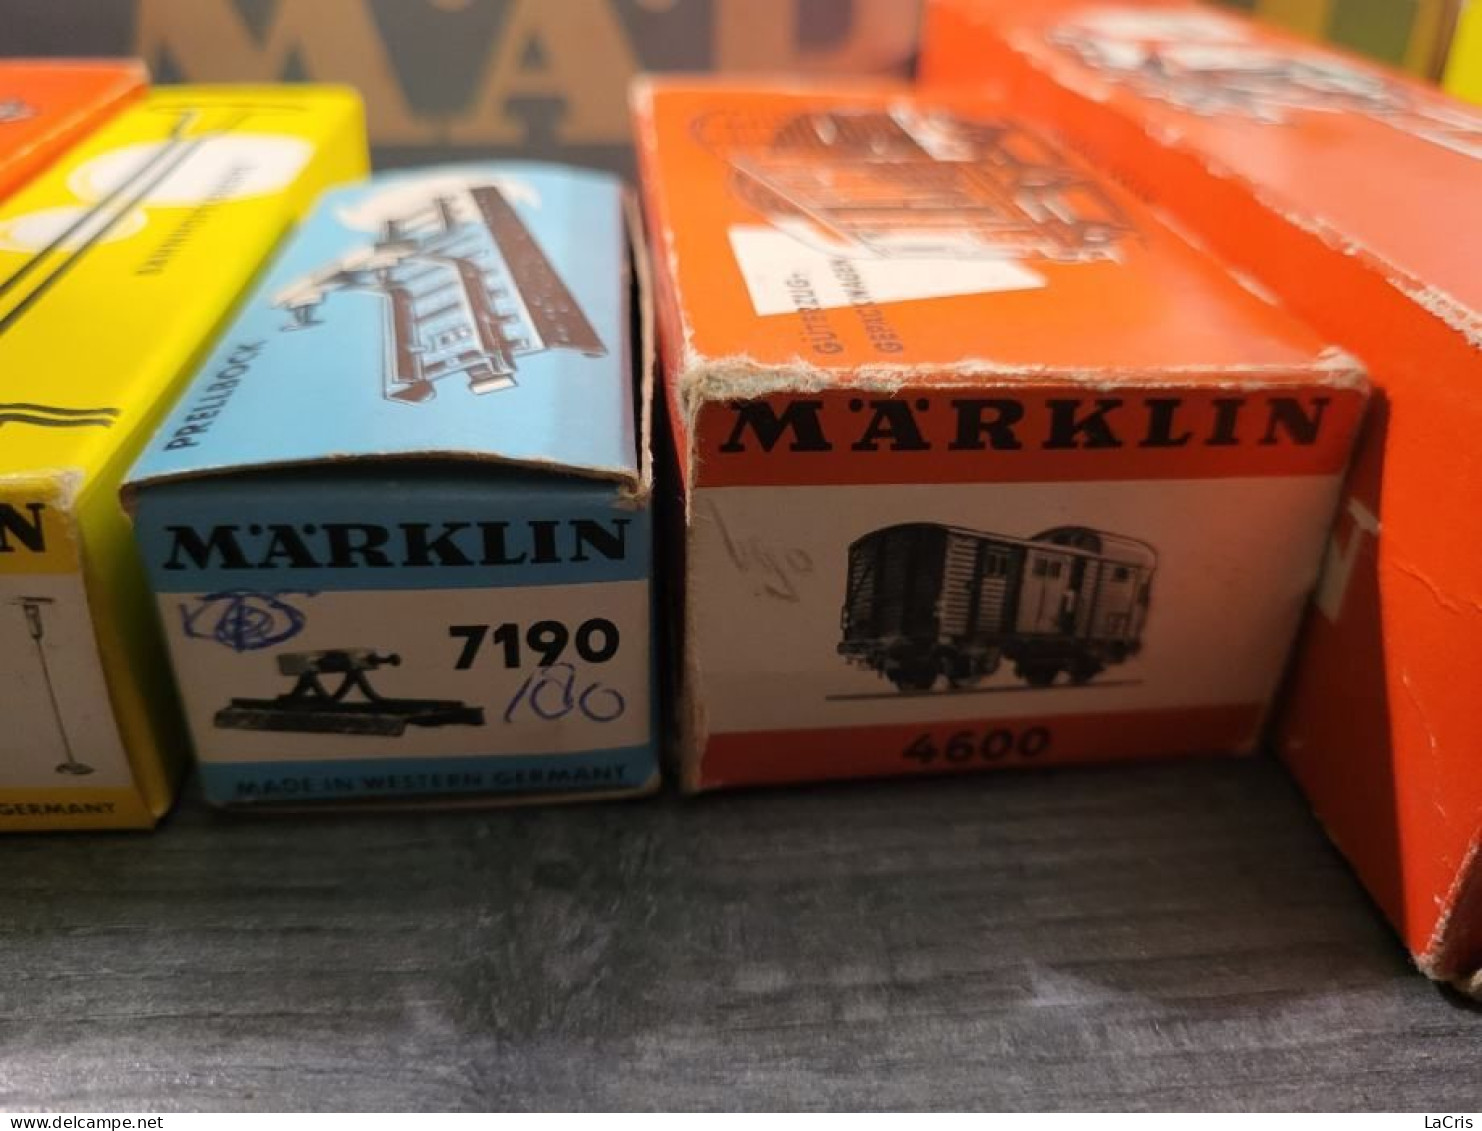 Marklin Collector's Set With Orginal Boxes.